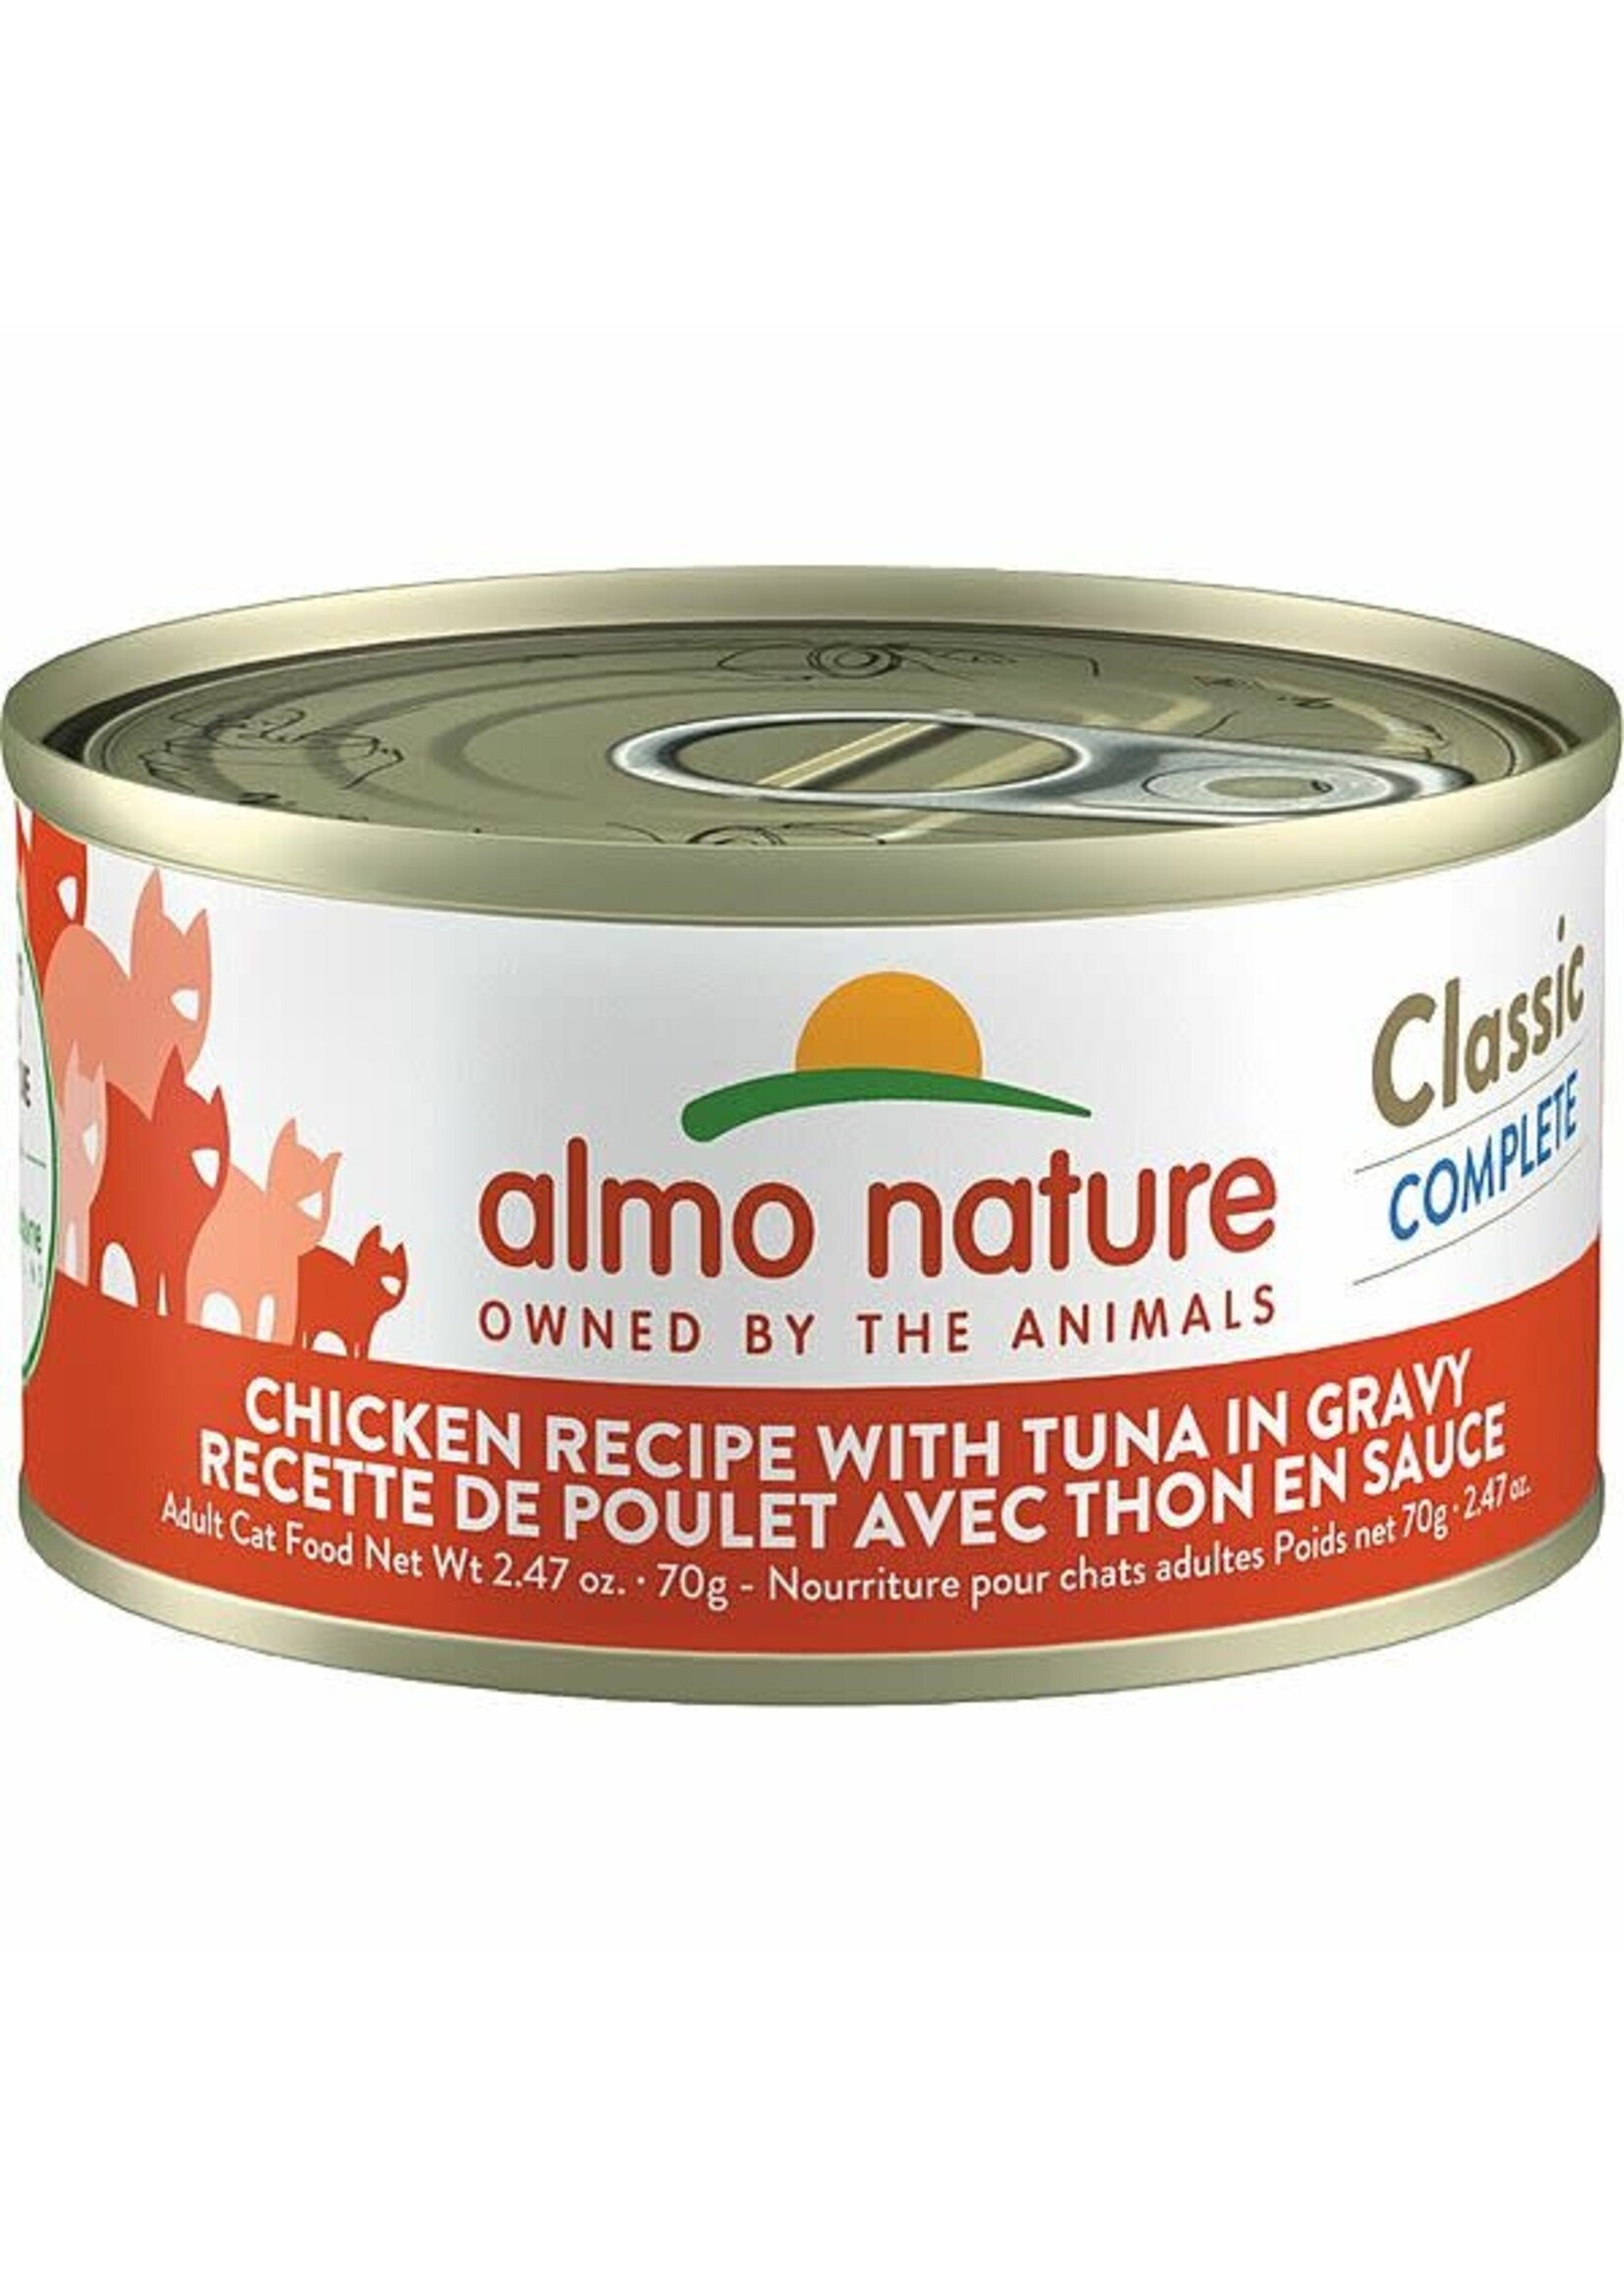 almo Nature almo nature Classic Complete Chicken Recipe w/ Tuna in Gravy 70gm single